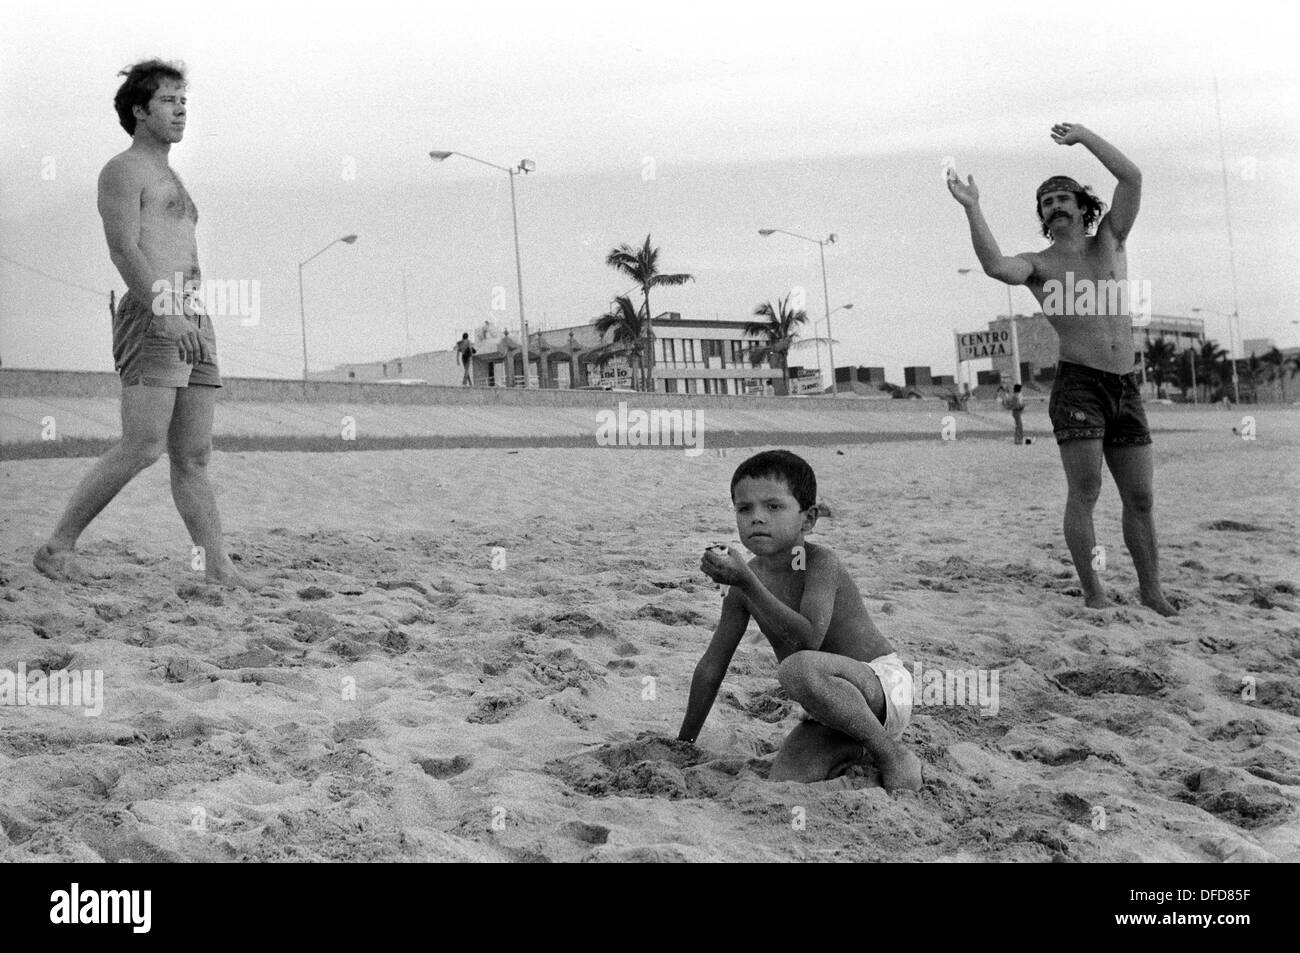 Mazatlan Mexiko 1973 amerikanische Touristen am Strand, hängen über die Weihnachtsferien. Der junge Mexikaner hat einen kleinen Vogel in der Hand. Mexikanischer Bundesstaat Sinaloa aus den 1970er Jahren. HOMER SYKES Stockfoto